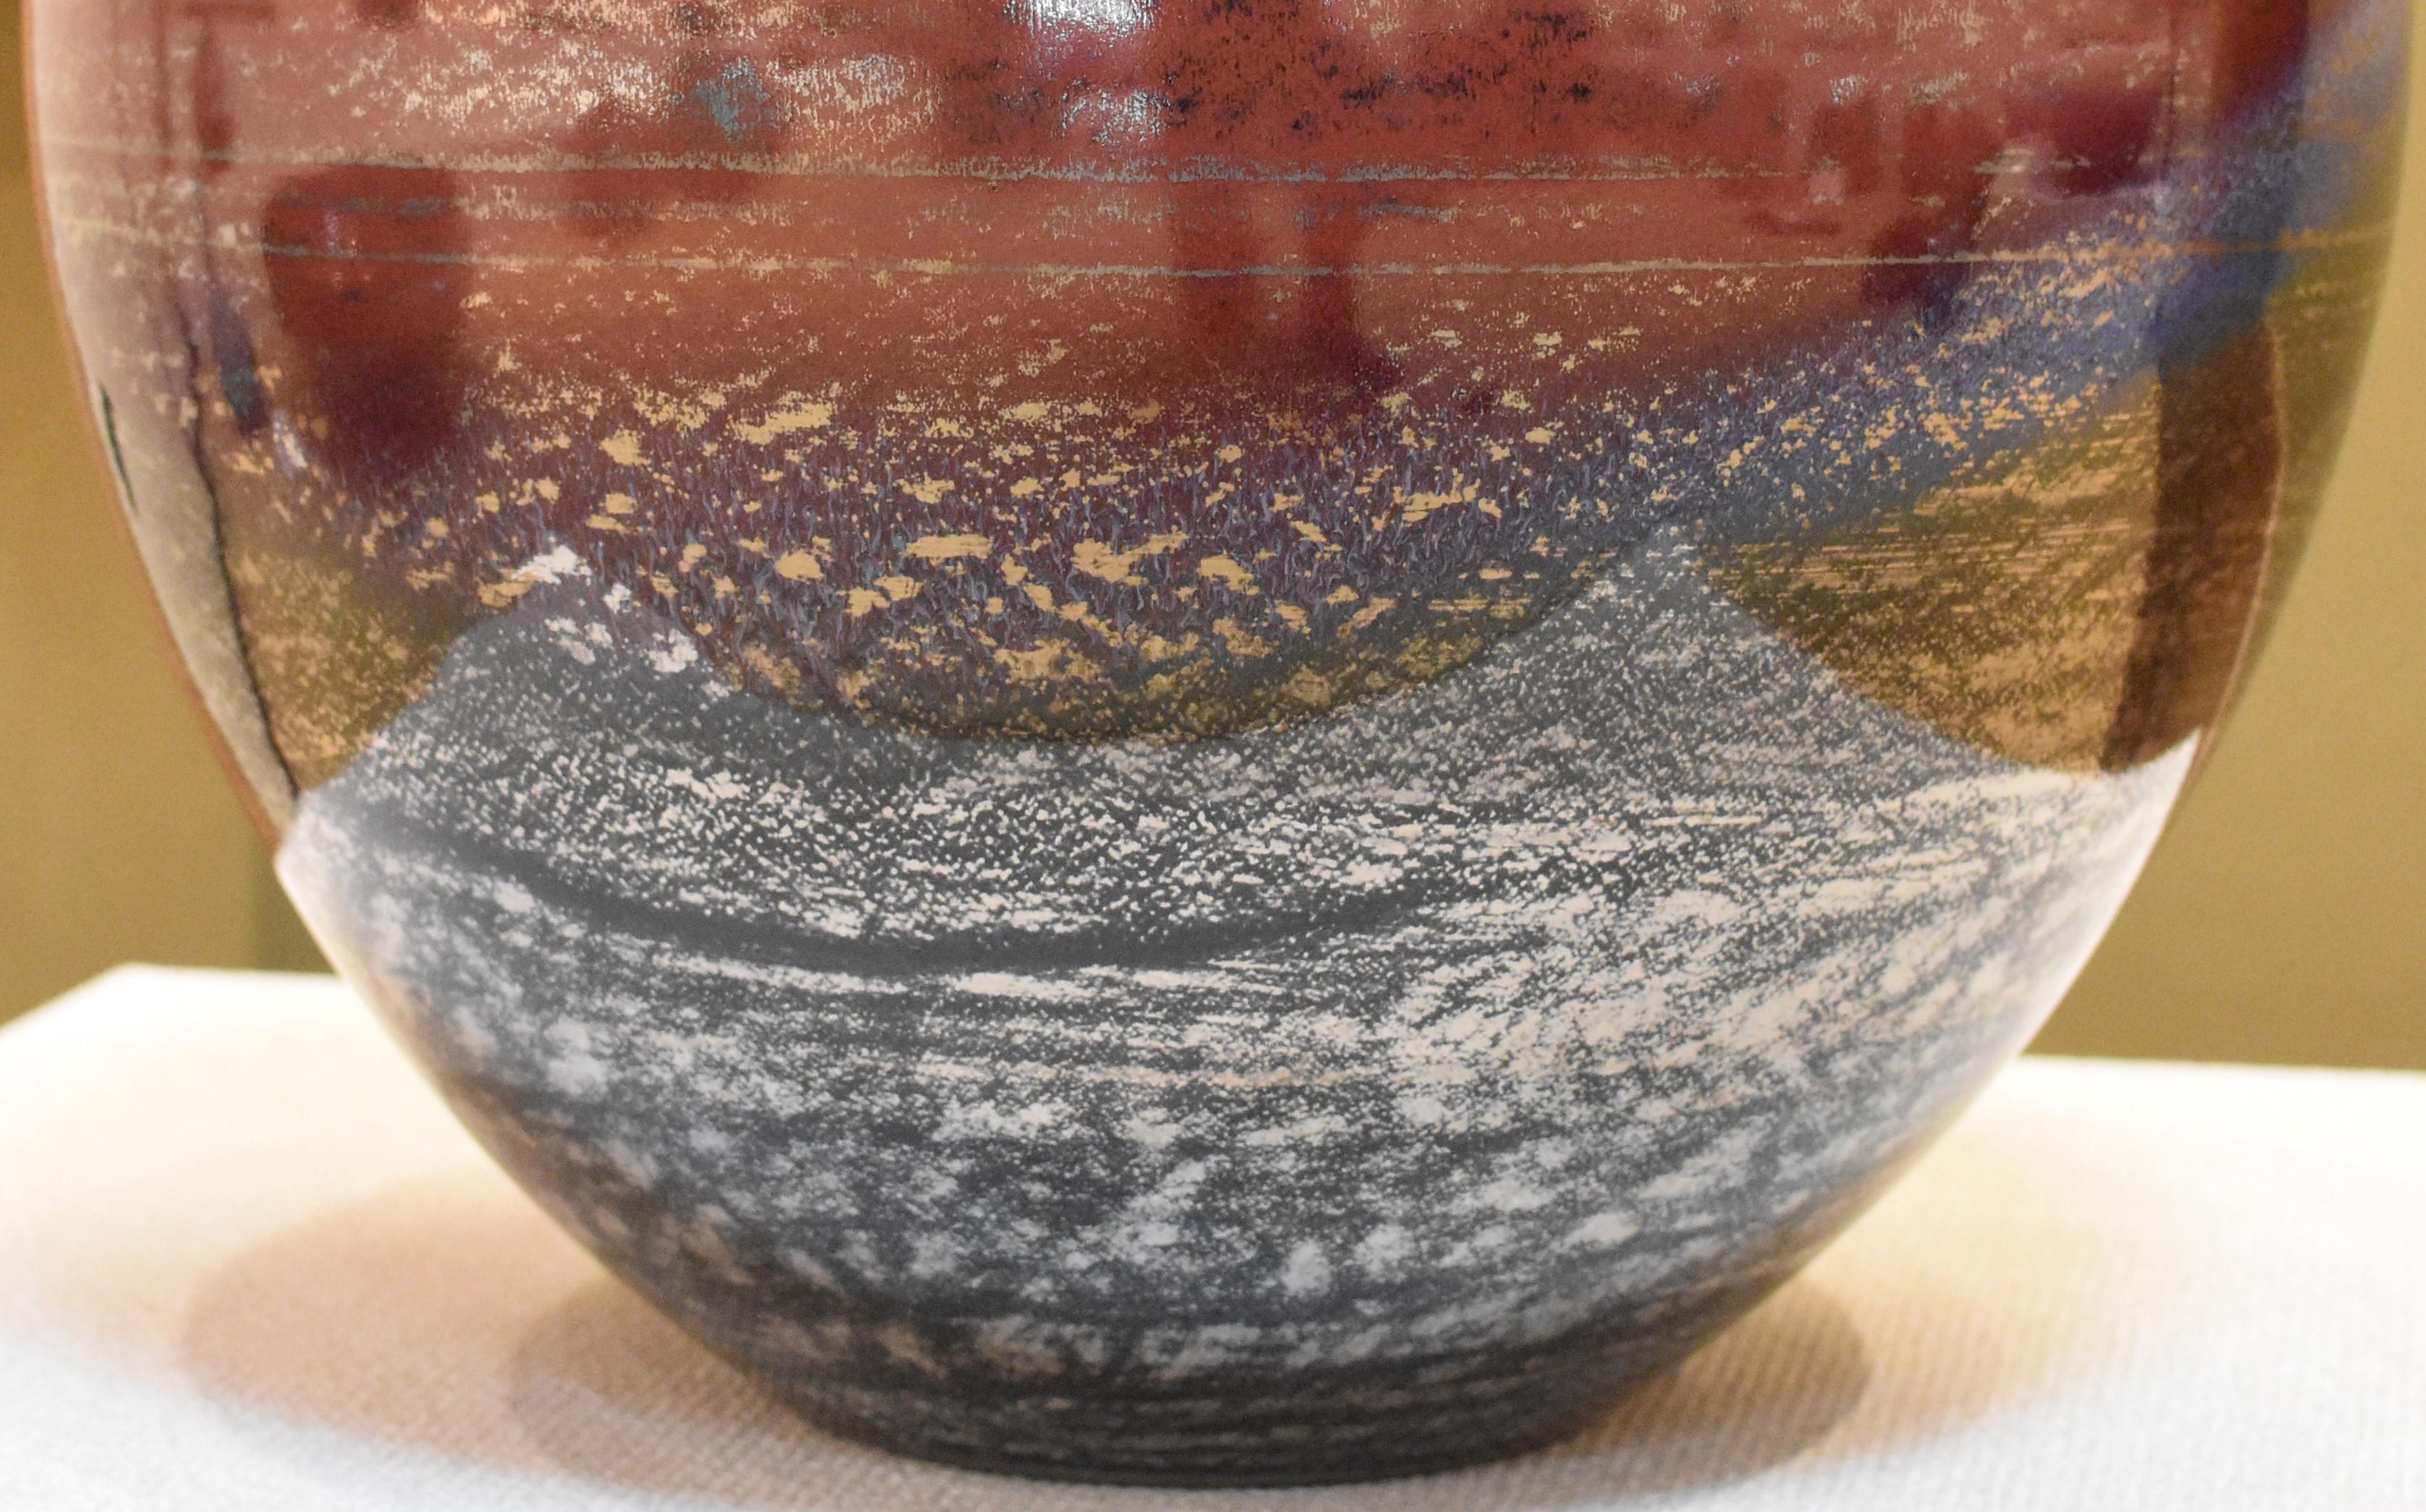 Hervorragende Vase aus japanischem zeitgenössischem handglasiertem Porzellan in Museumsqualität, ein preisgekröntes Ausstellungsstück in Eisenrot, Schwarz und Violett von einem weithin bewunderten, hochgelobten Meisterkünstler. Der Künstler